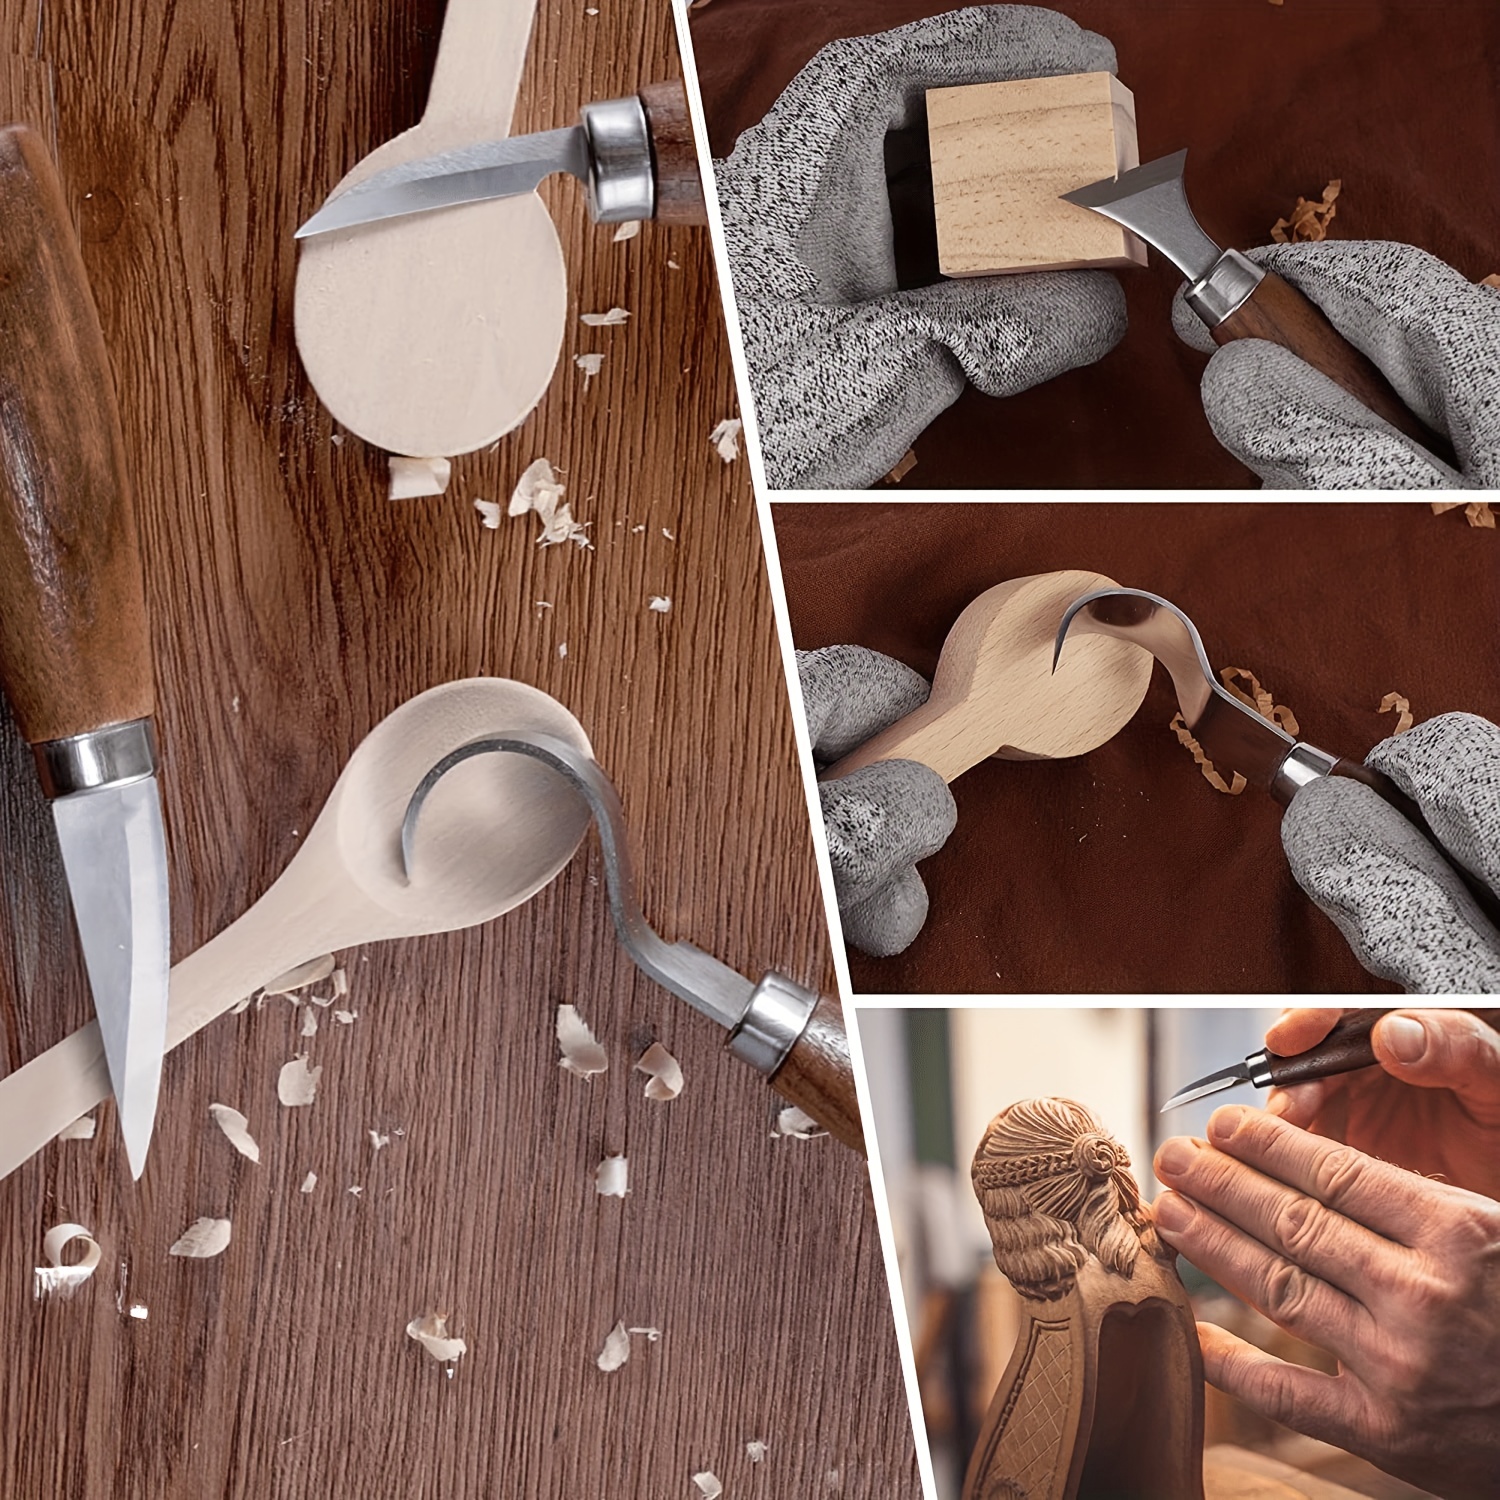 Wood Carving Kit for Beginners 7 PCS, Wood Whittling Kit - Gift Set